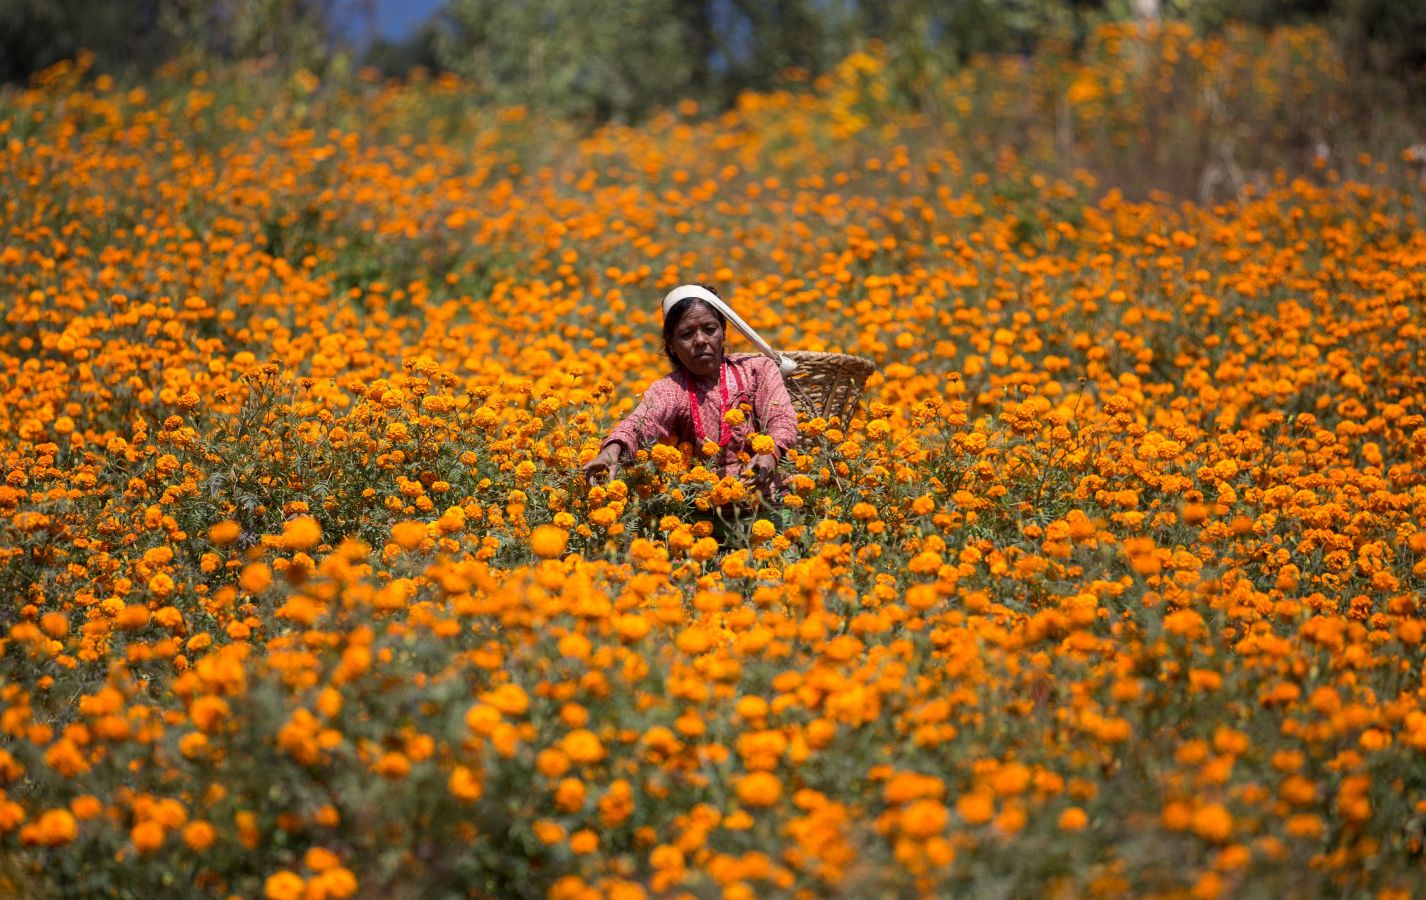 La flor del amaranto globoso se utiliza para formar guirnaldas y adorar a los dioses y animales durante el Festival del Diwali que comienza a celebrarse el 5 de noviembre. Por eso este viernes multitud de mujeres han iniciado la recolecta de estas flores. El festival, de cinco días de duración, es el segundo mayor evento para los hindúes en Nepal. 